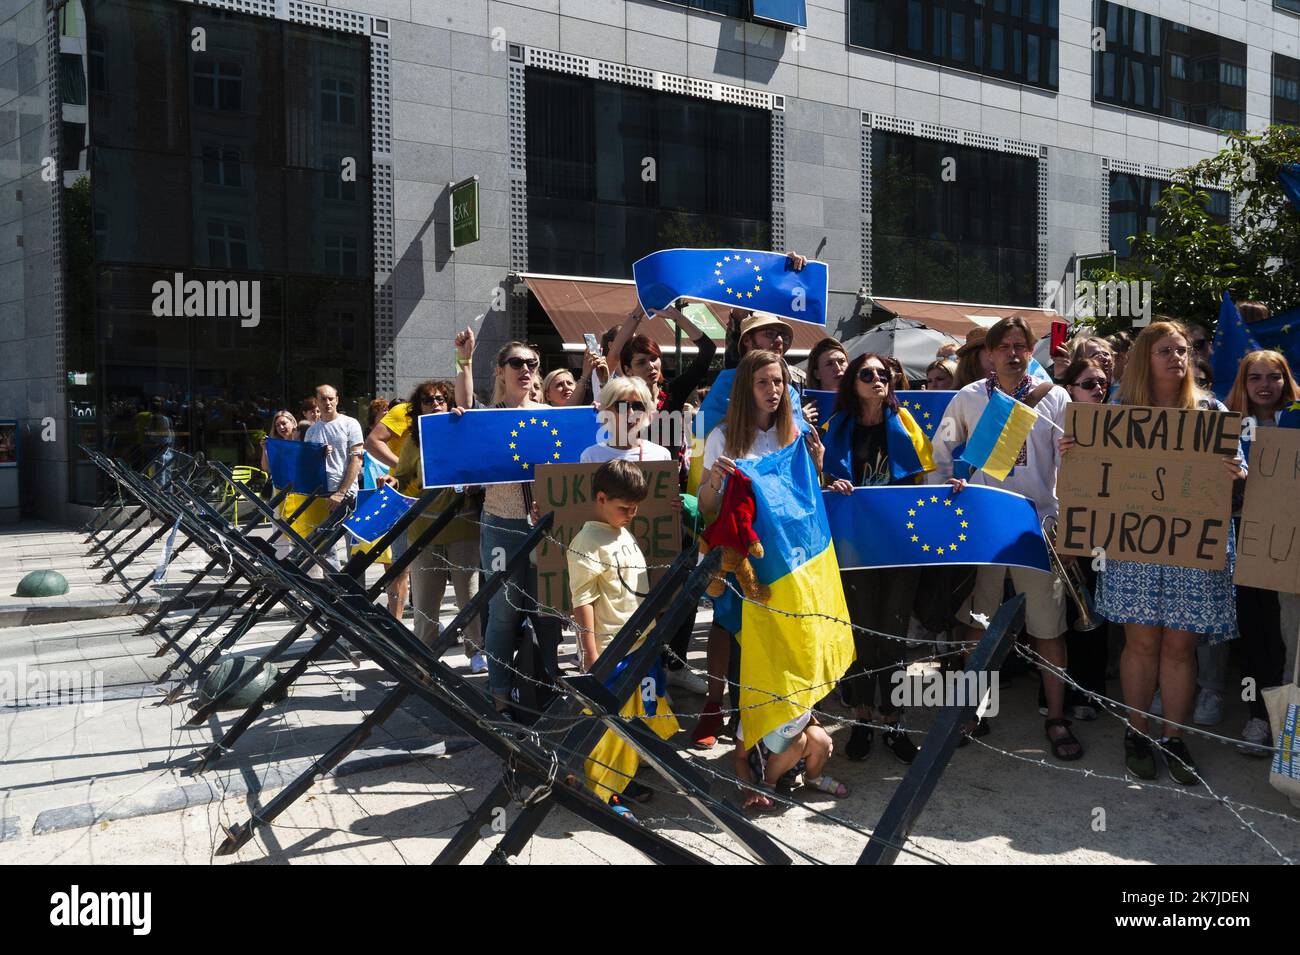 ©Nicolas Landemard / Le Pictorium/MAXPPP - Bruxelles 23/06/2022 Nicolas Landemard / Le Pictorium - 23/06/2022 - Belgique / Bruxelles / Bruxelles - Entre 50 et 80 personnes se sont reunies en marge du sommet europeen des balkans en soutien a la candidature de l'ukraine pour une adhesion a l'UE. L'issue du sommet devra decider si la candidature de l'Ukraine sera acceptee et la procedure d'integration lancee. / 23/06/2022 - Belgium / Brussels / Brussels - Between 50 and 80 people gathered on the sidelines of the EU Balkan Summit in support of Ukraine's bid for EU membership. The outcome of the su Stock Photo